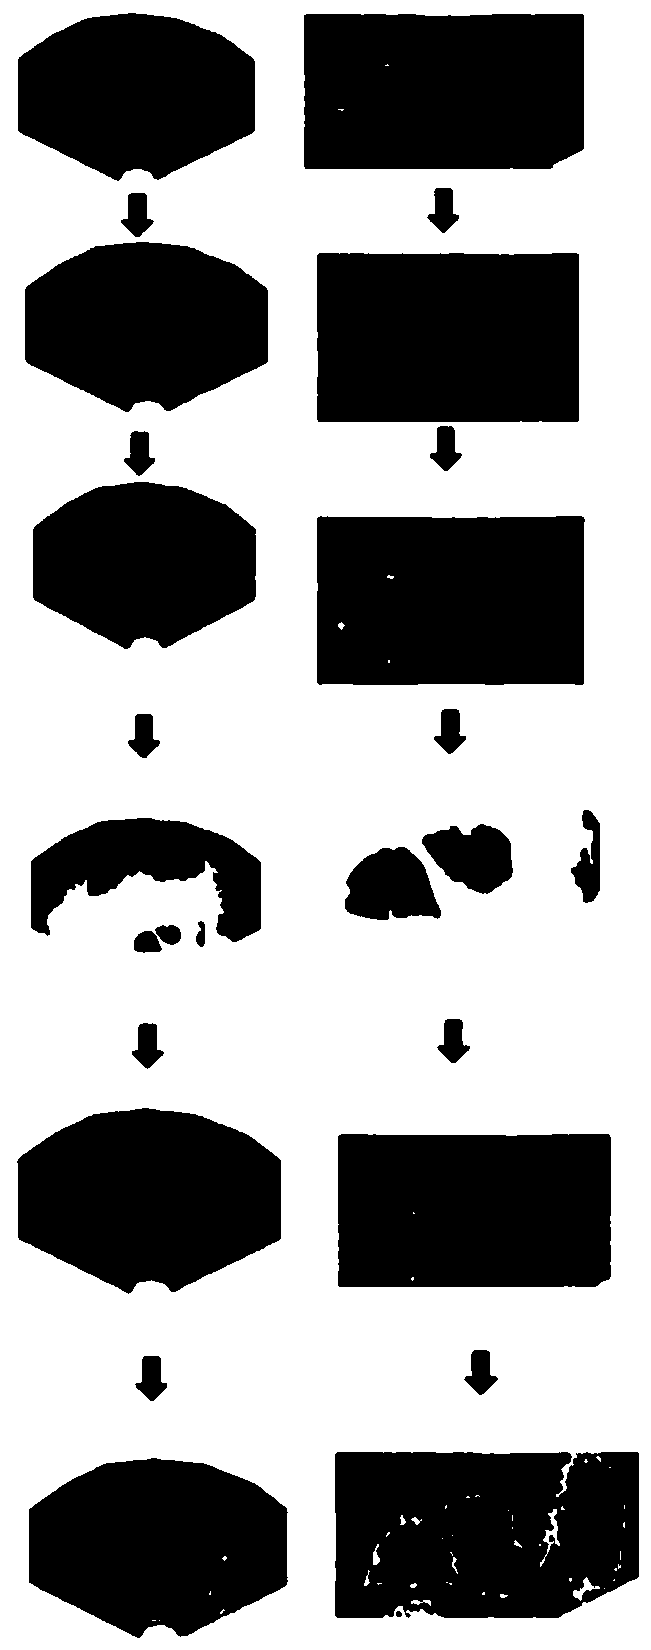 Follicle ultrasonic processing method and system based on level set image segmentation